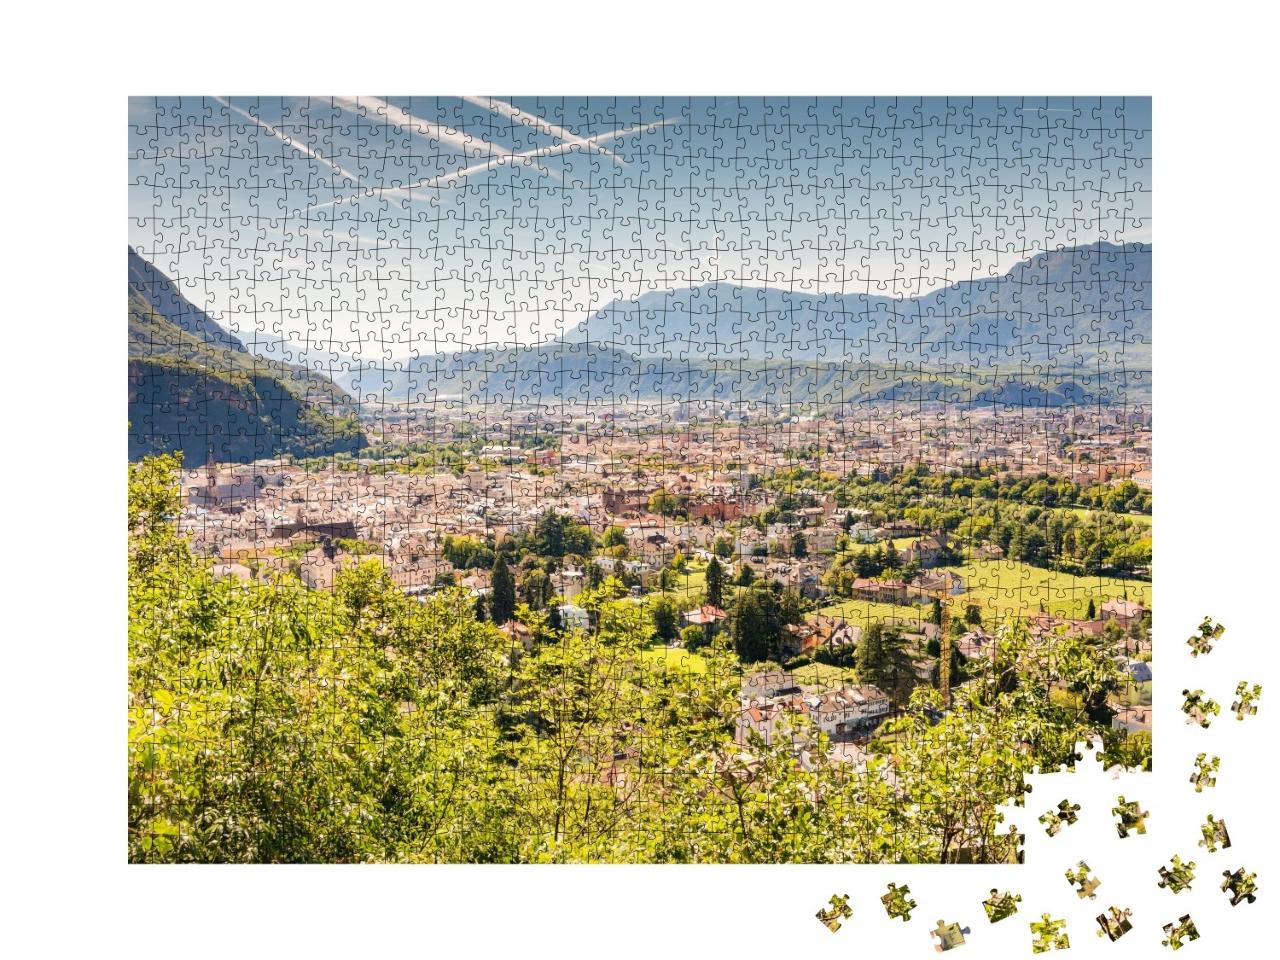 Puzzle de 1000 pièces « Vue sur Bolzano, Tyrol du Sud, Italie »